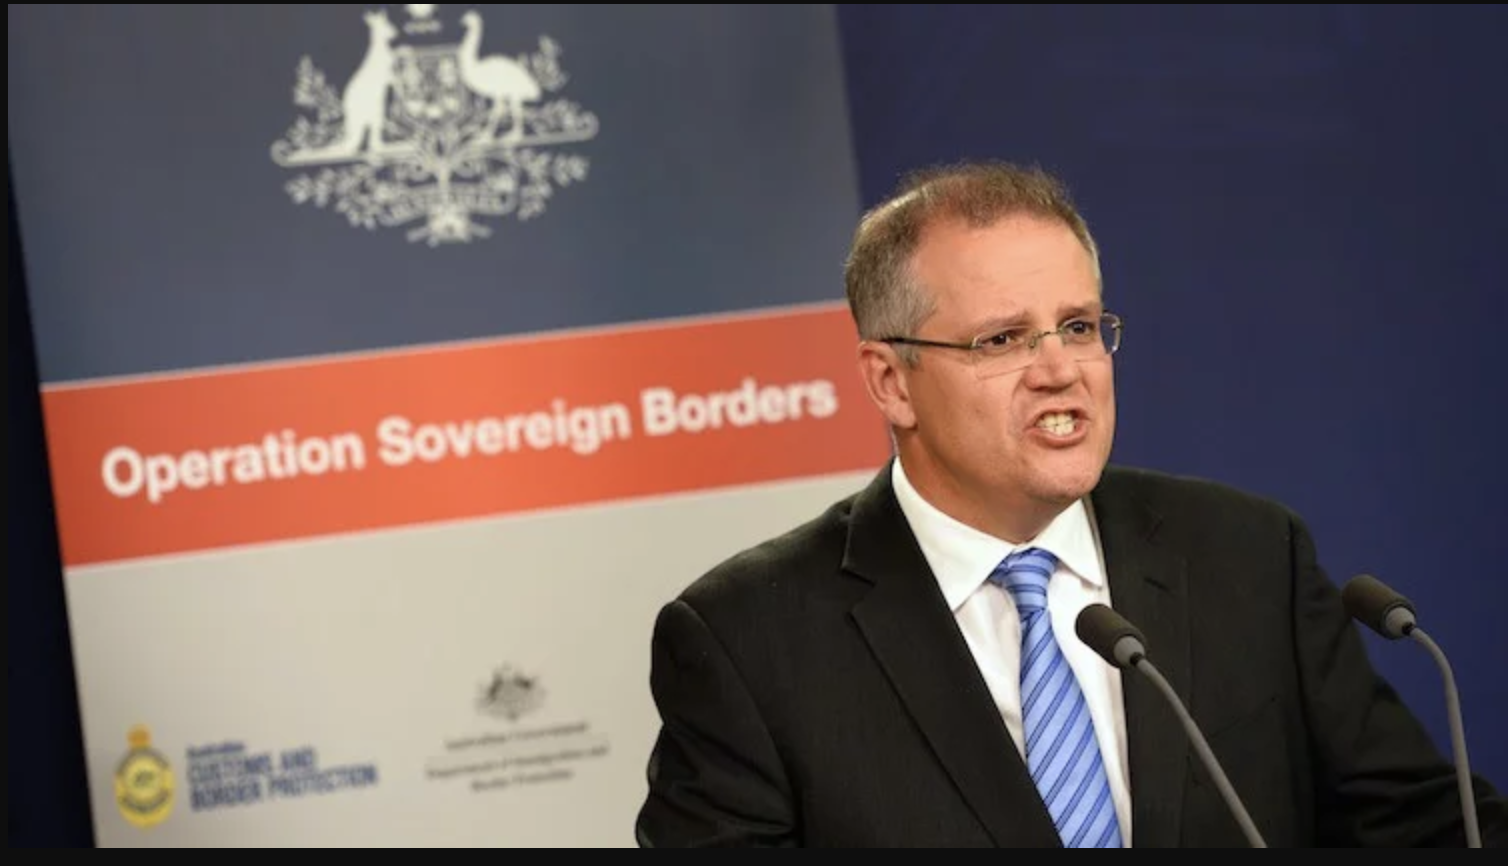 Scott Morrison’s White Australia Policy 2.0